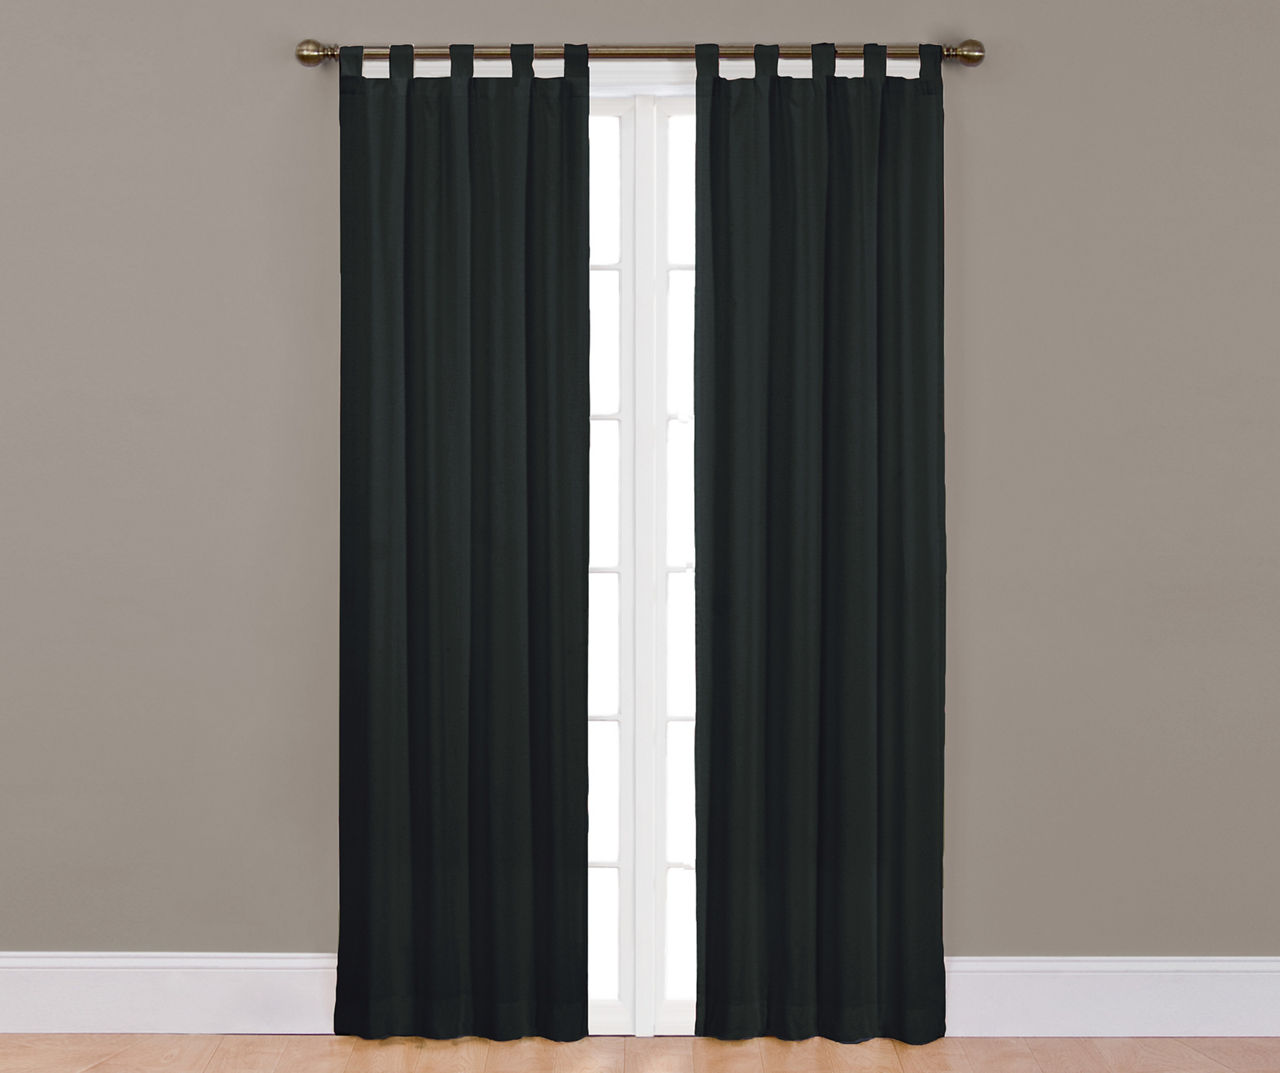 Colorado Black Curtain Panel Pair, (84")